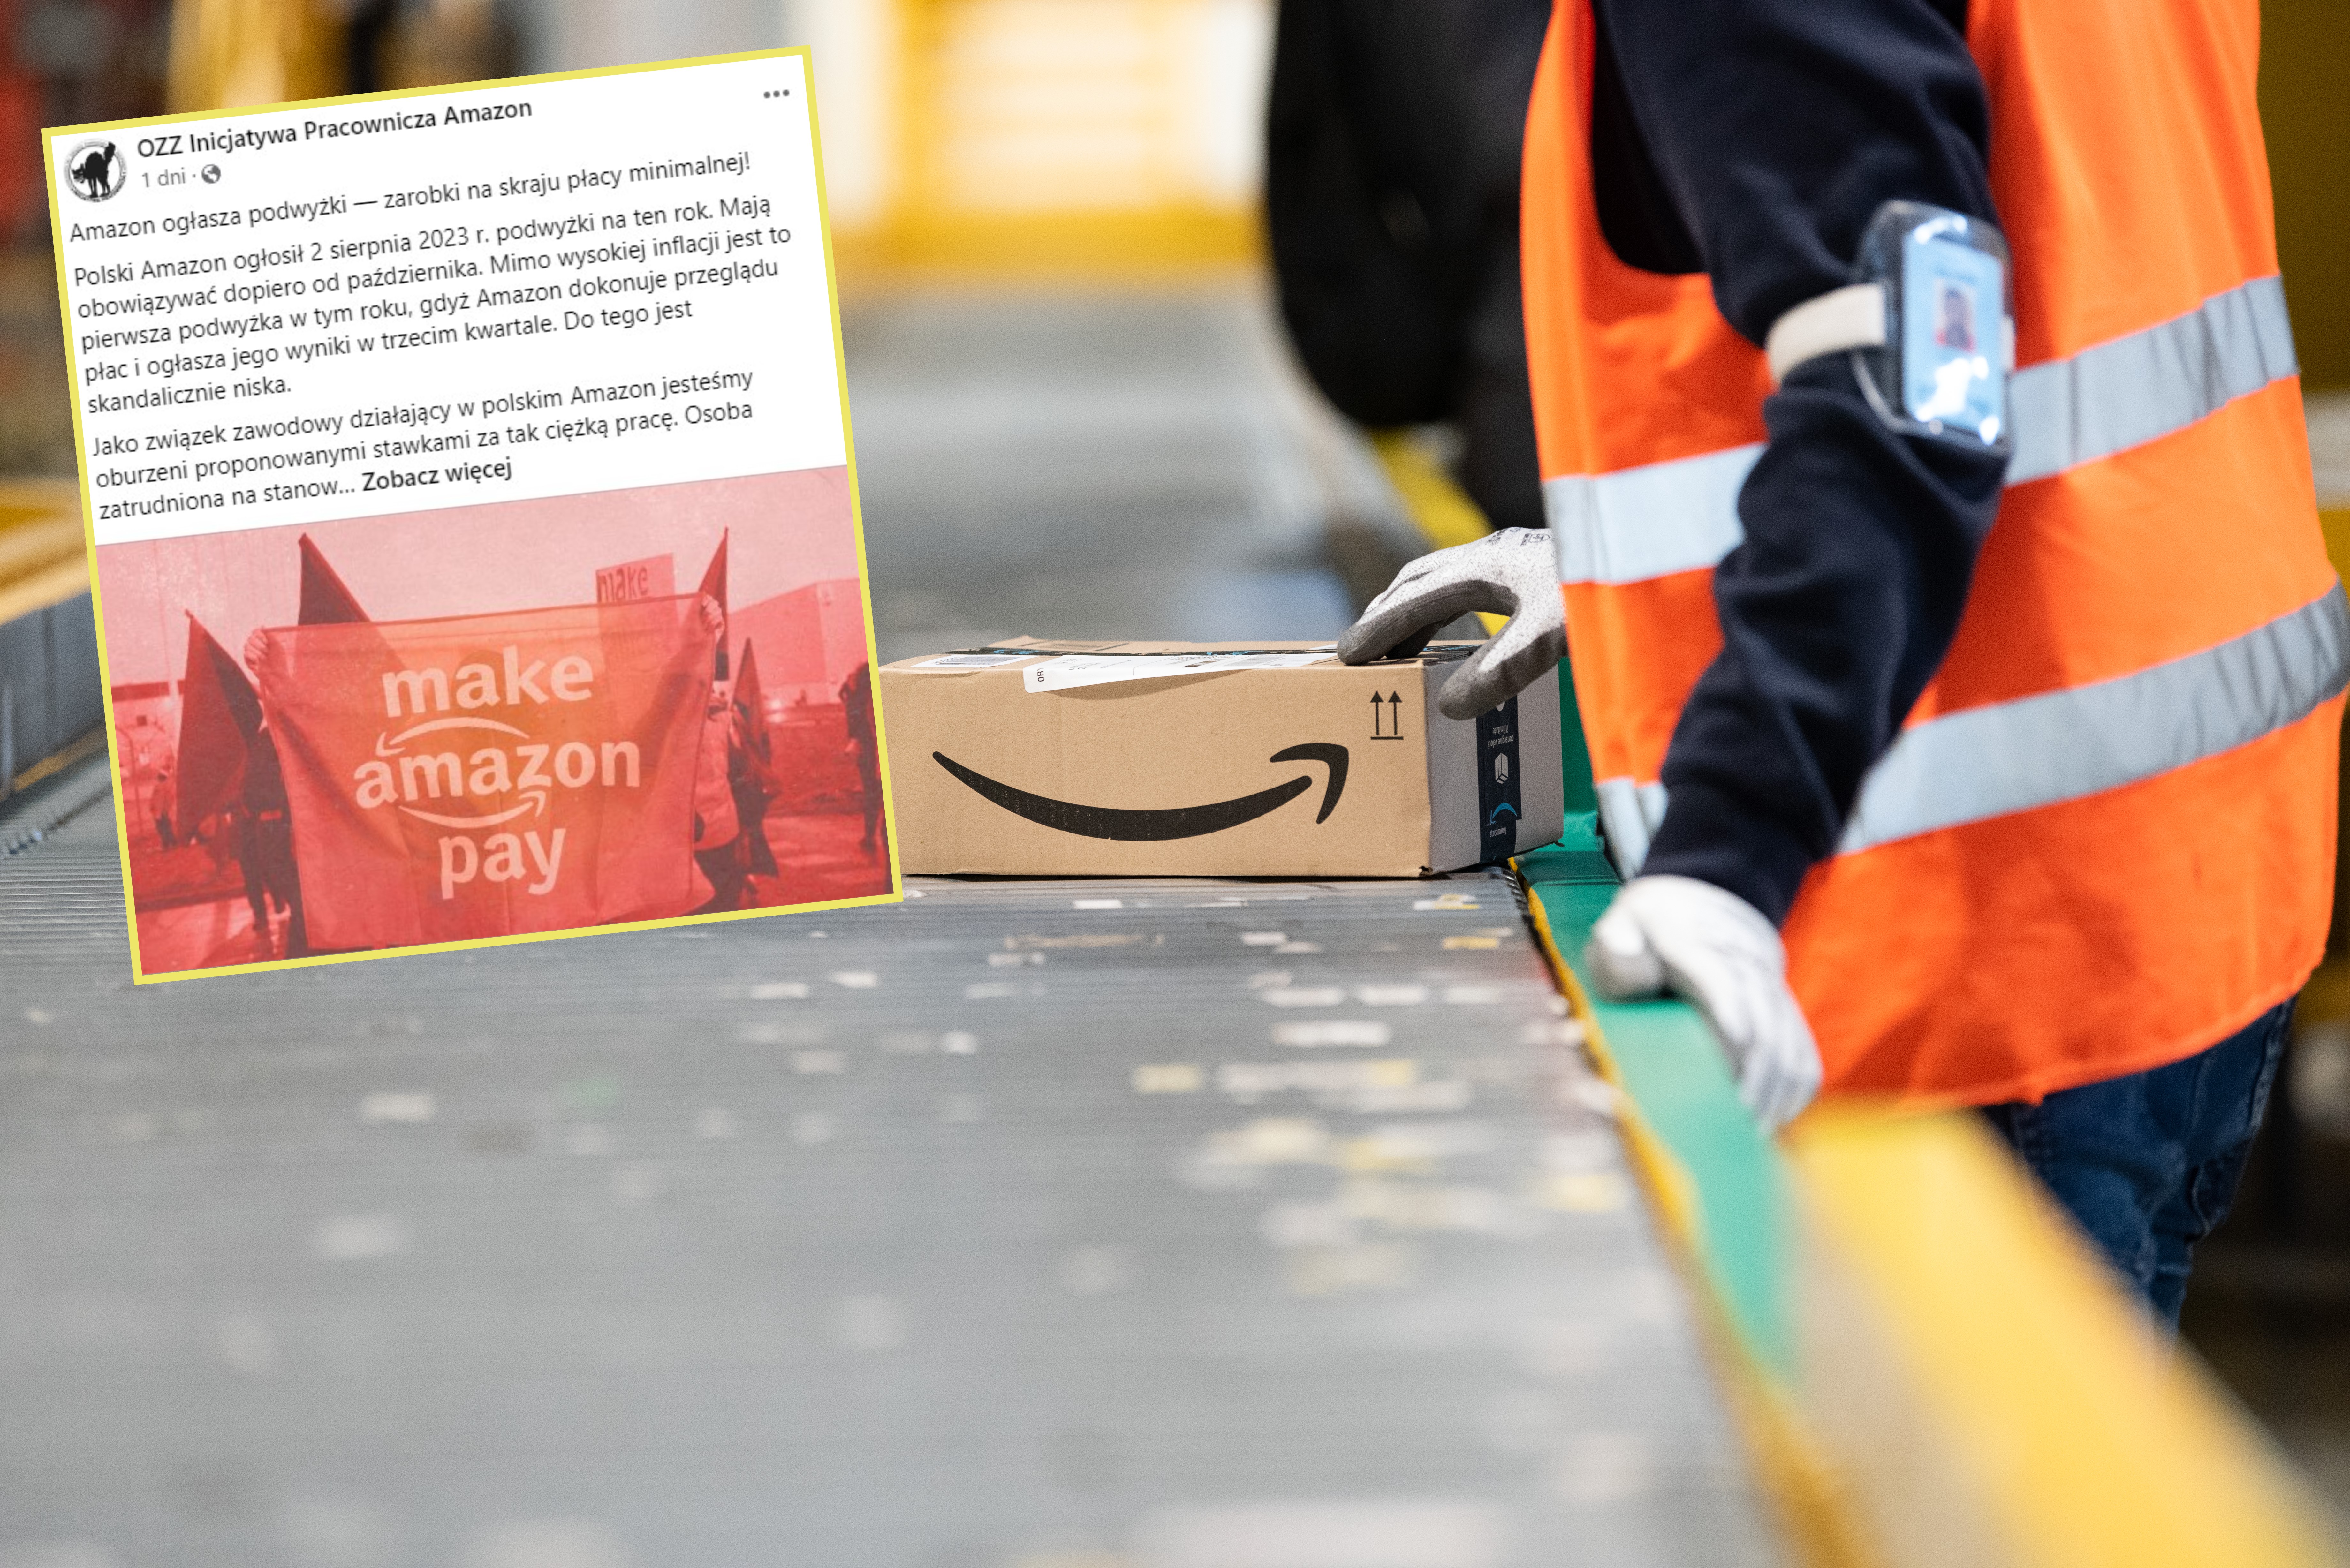 Amazon ogłasza podwyżkę płac. Pracownicy mówią wprost: to skandal!